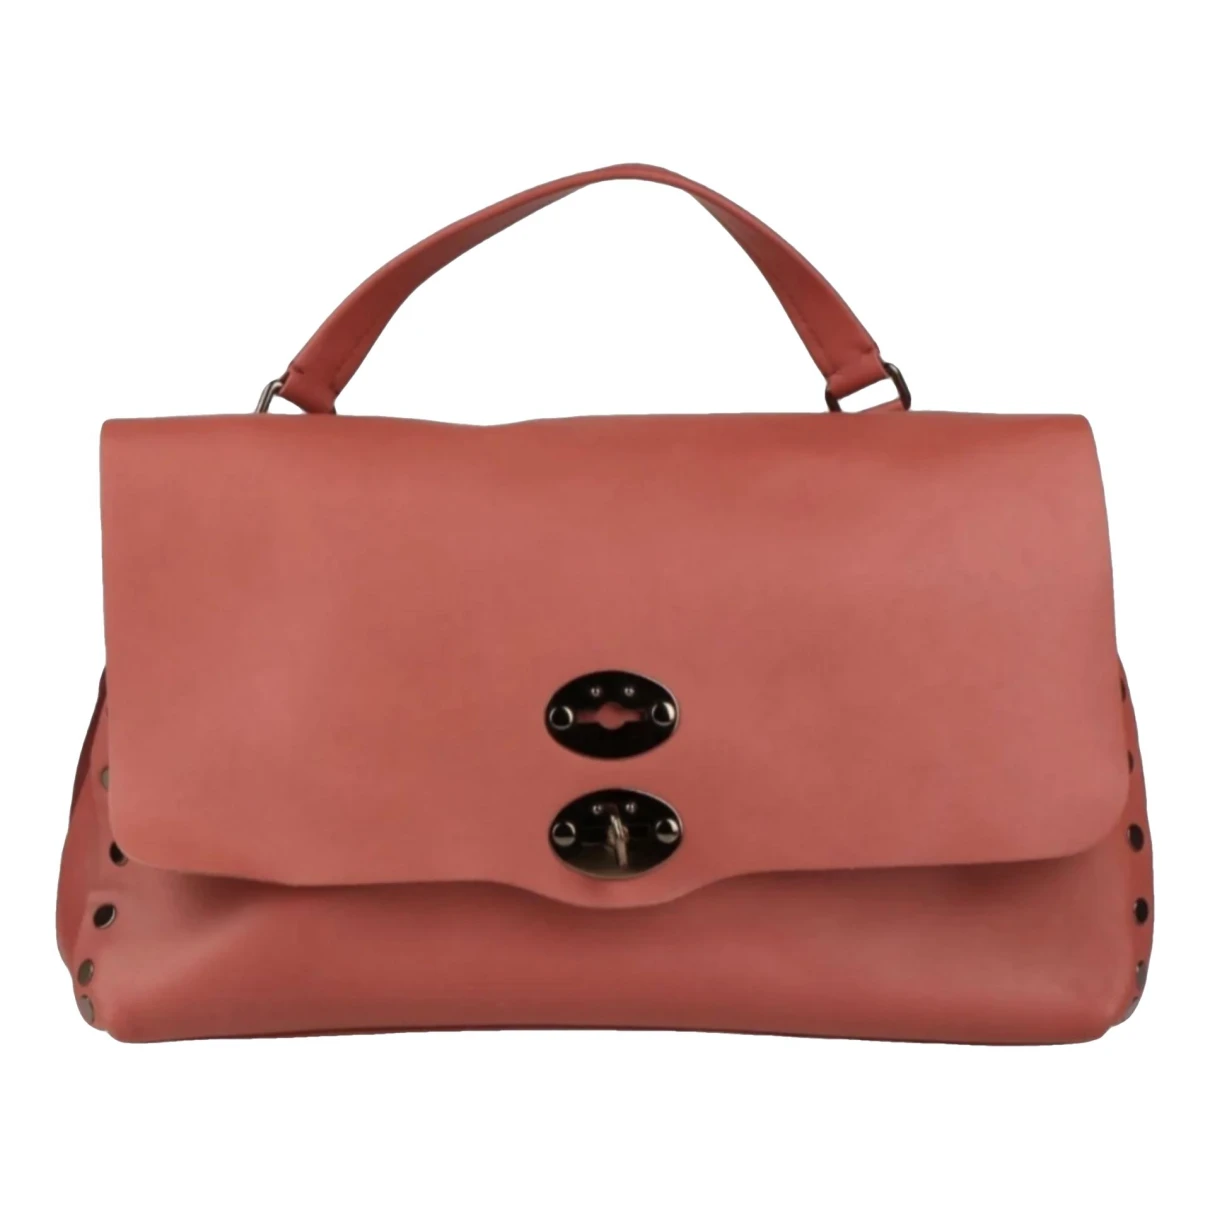 Pre-owned Zanellato Leather Handbag In Red